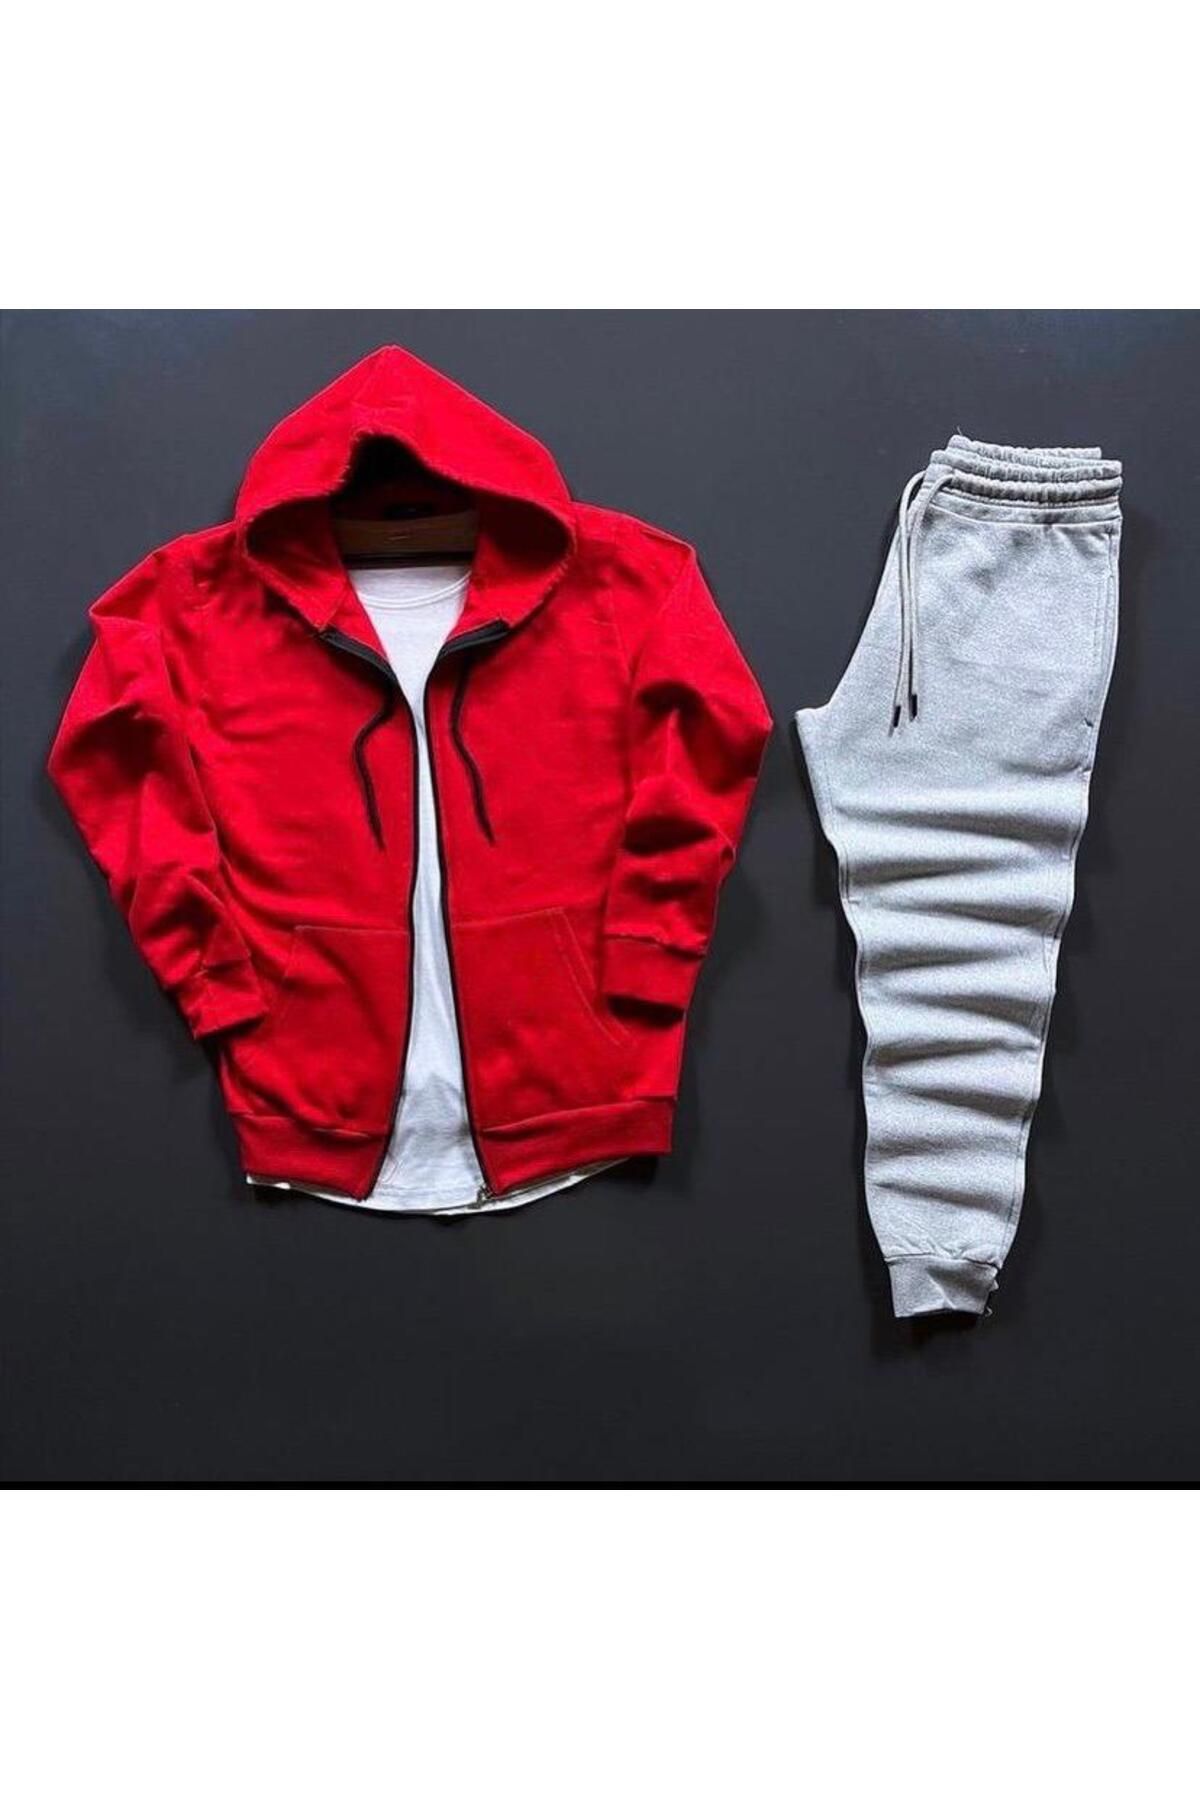 ANSECO STUDİO Kirmizi Kışlık Fermuarli Ceket Gri? Kişlik Eşofman Altı Kışlık Takım Unisex Ürün